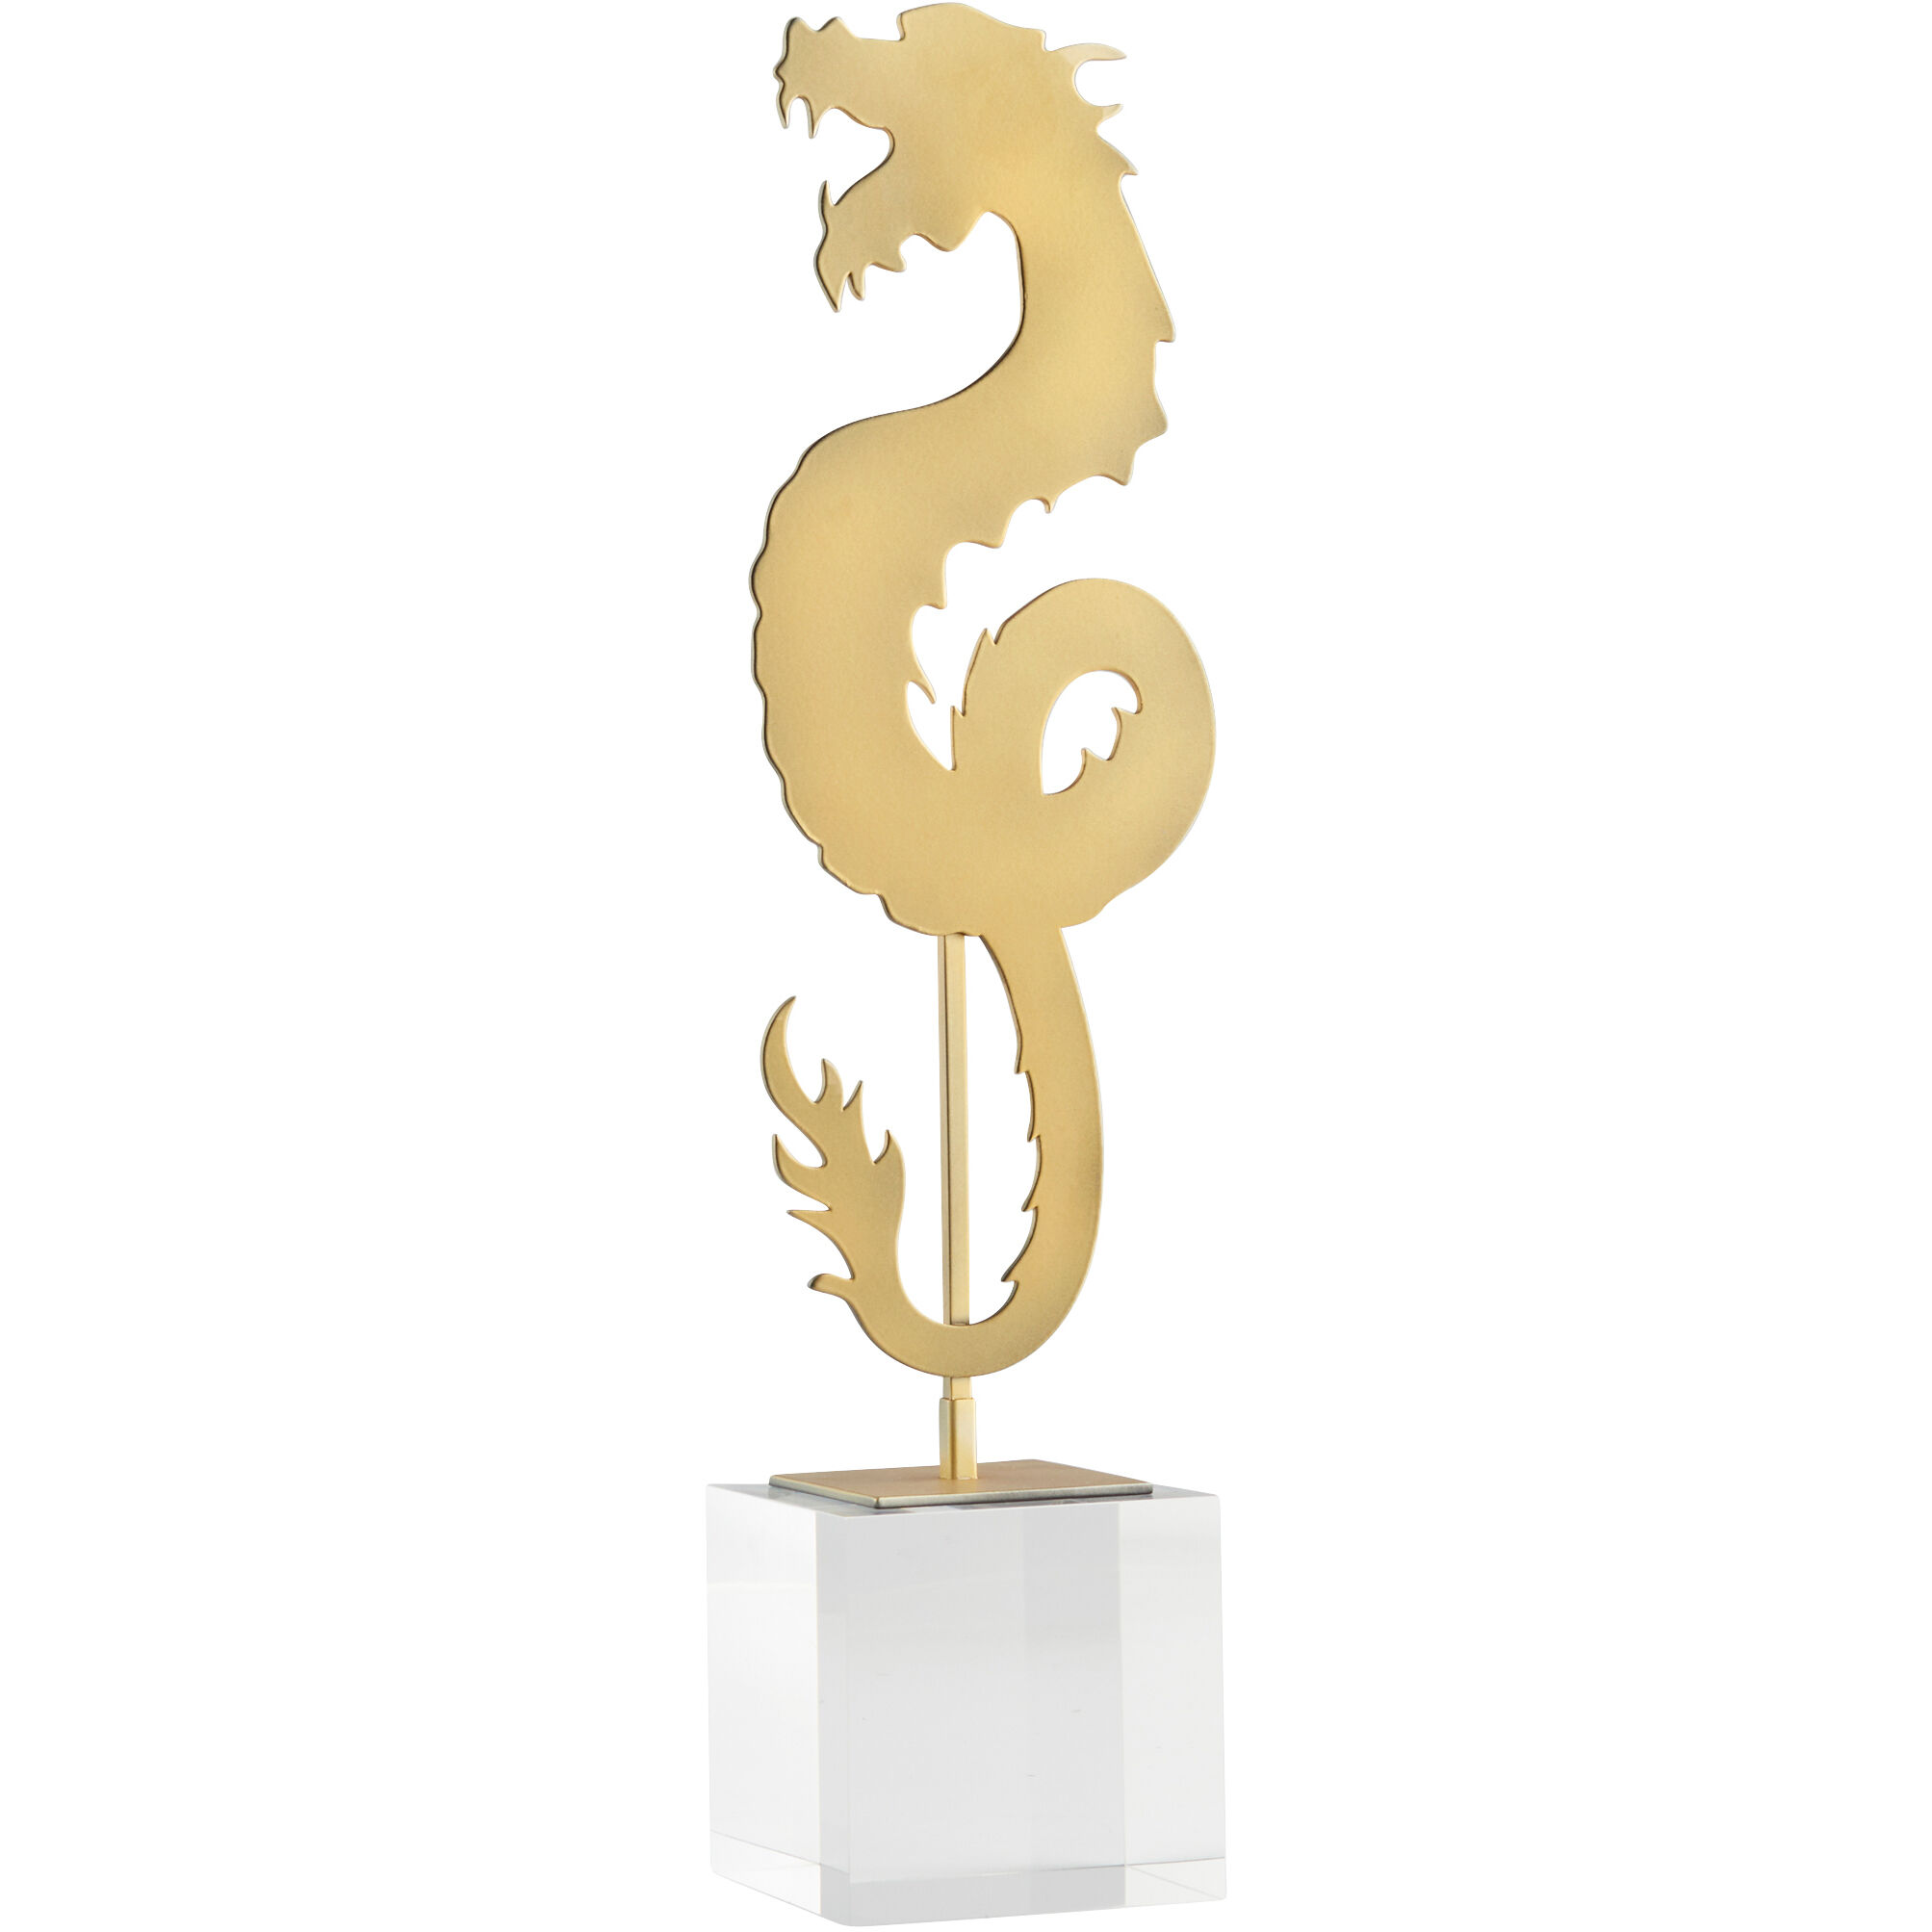 Haku Dragon Sculpture